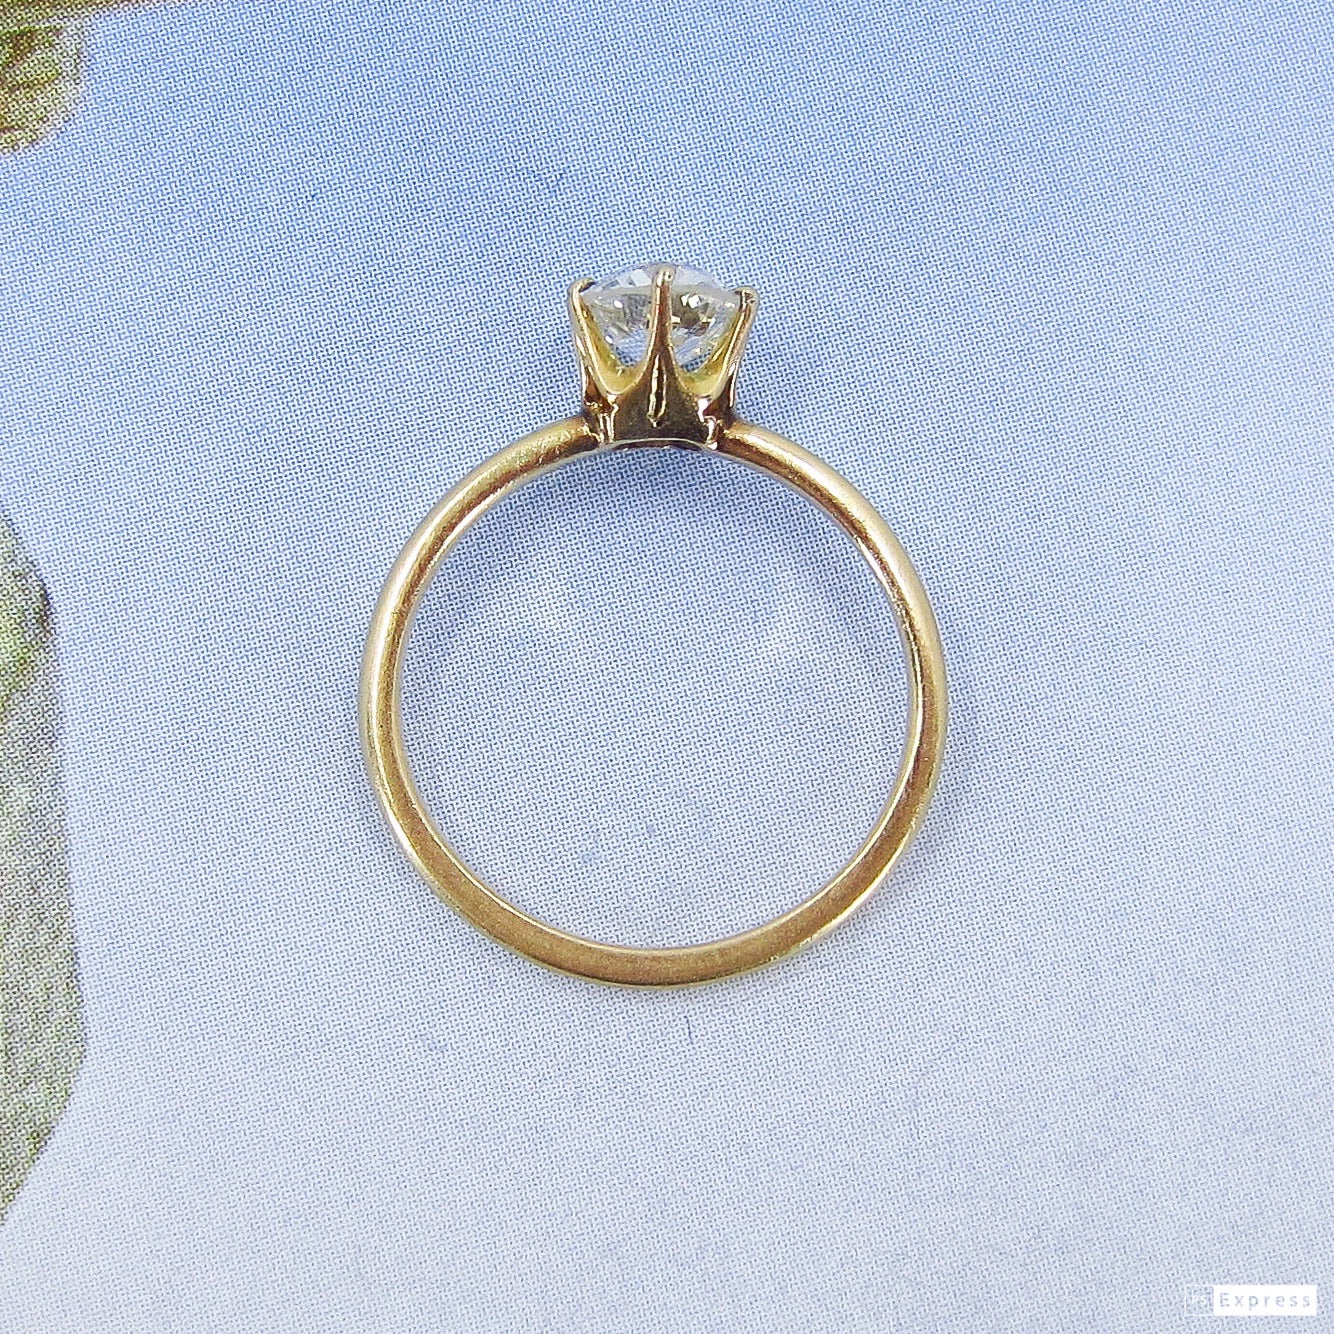 SOLD-Edwardian Old European .75ct Engagement Ring 18k, Kohn c. 1900